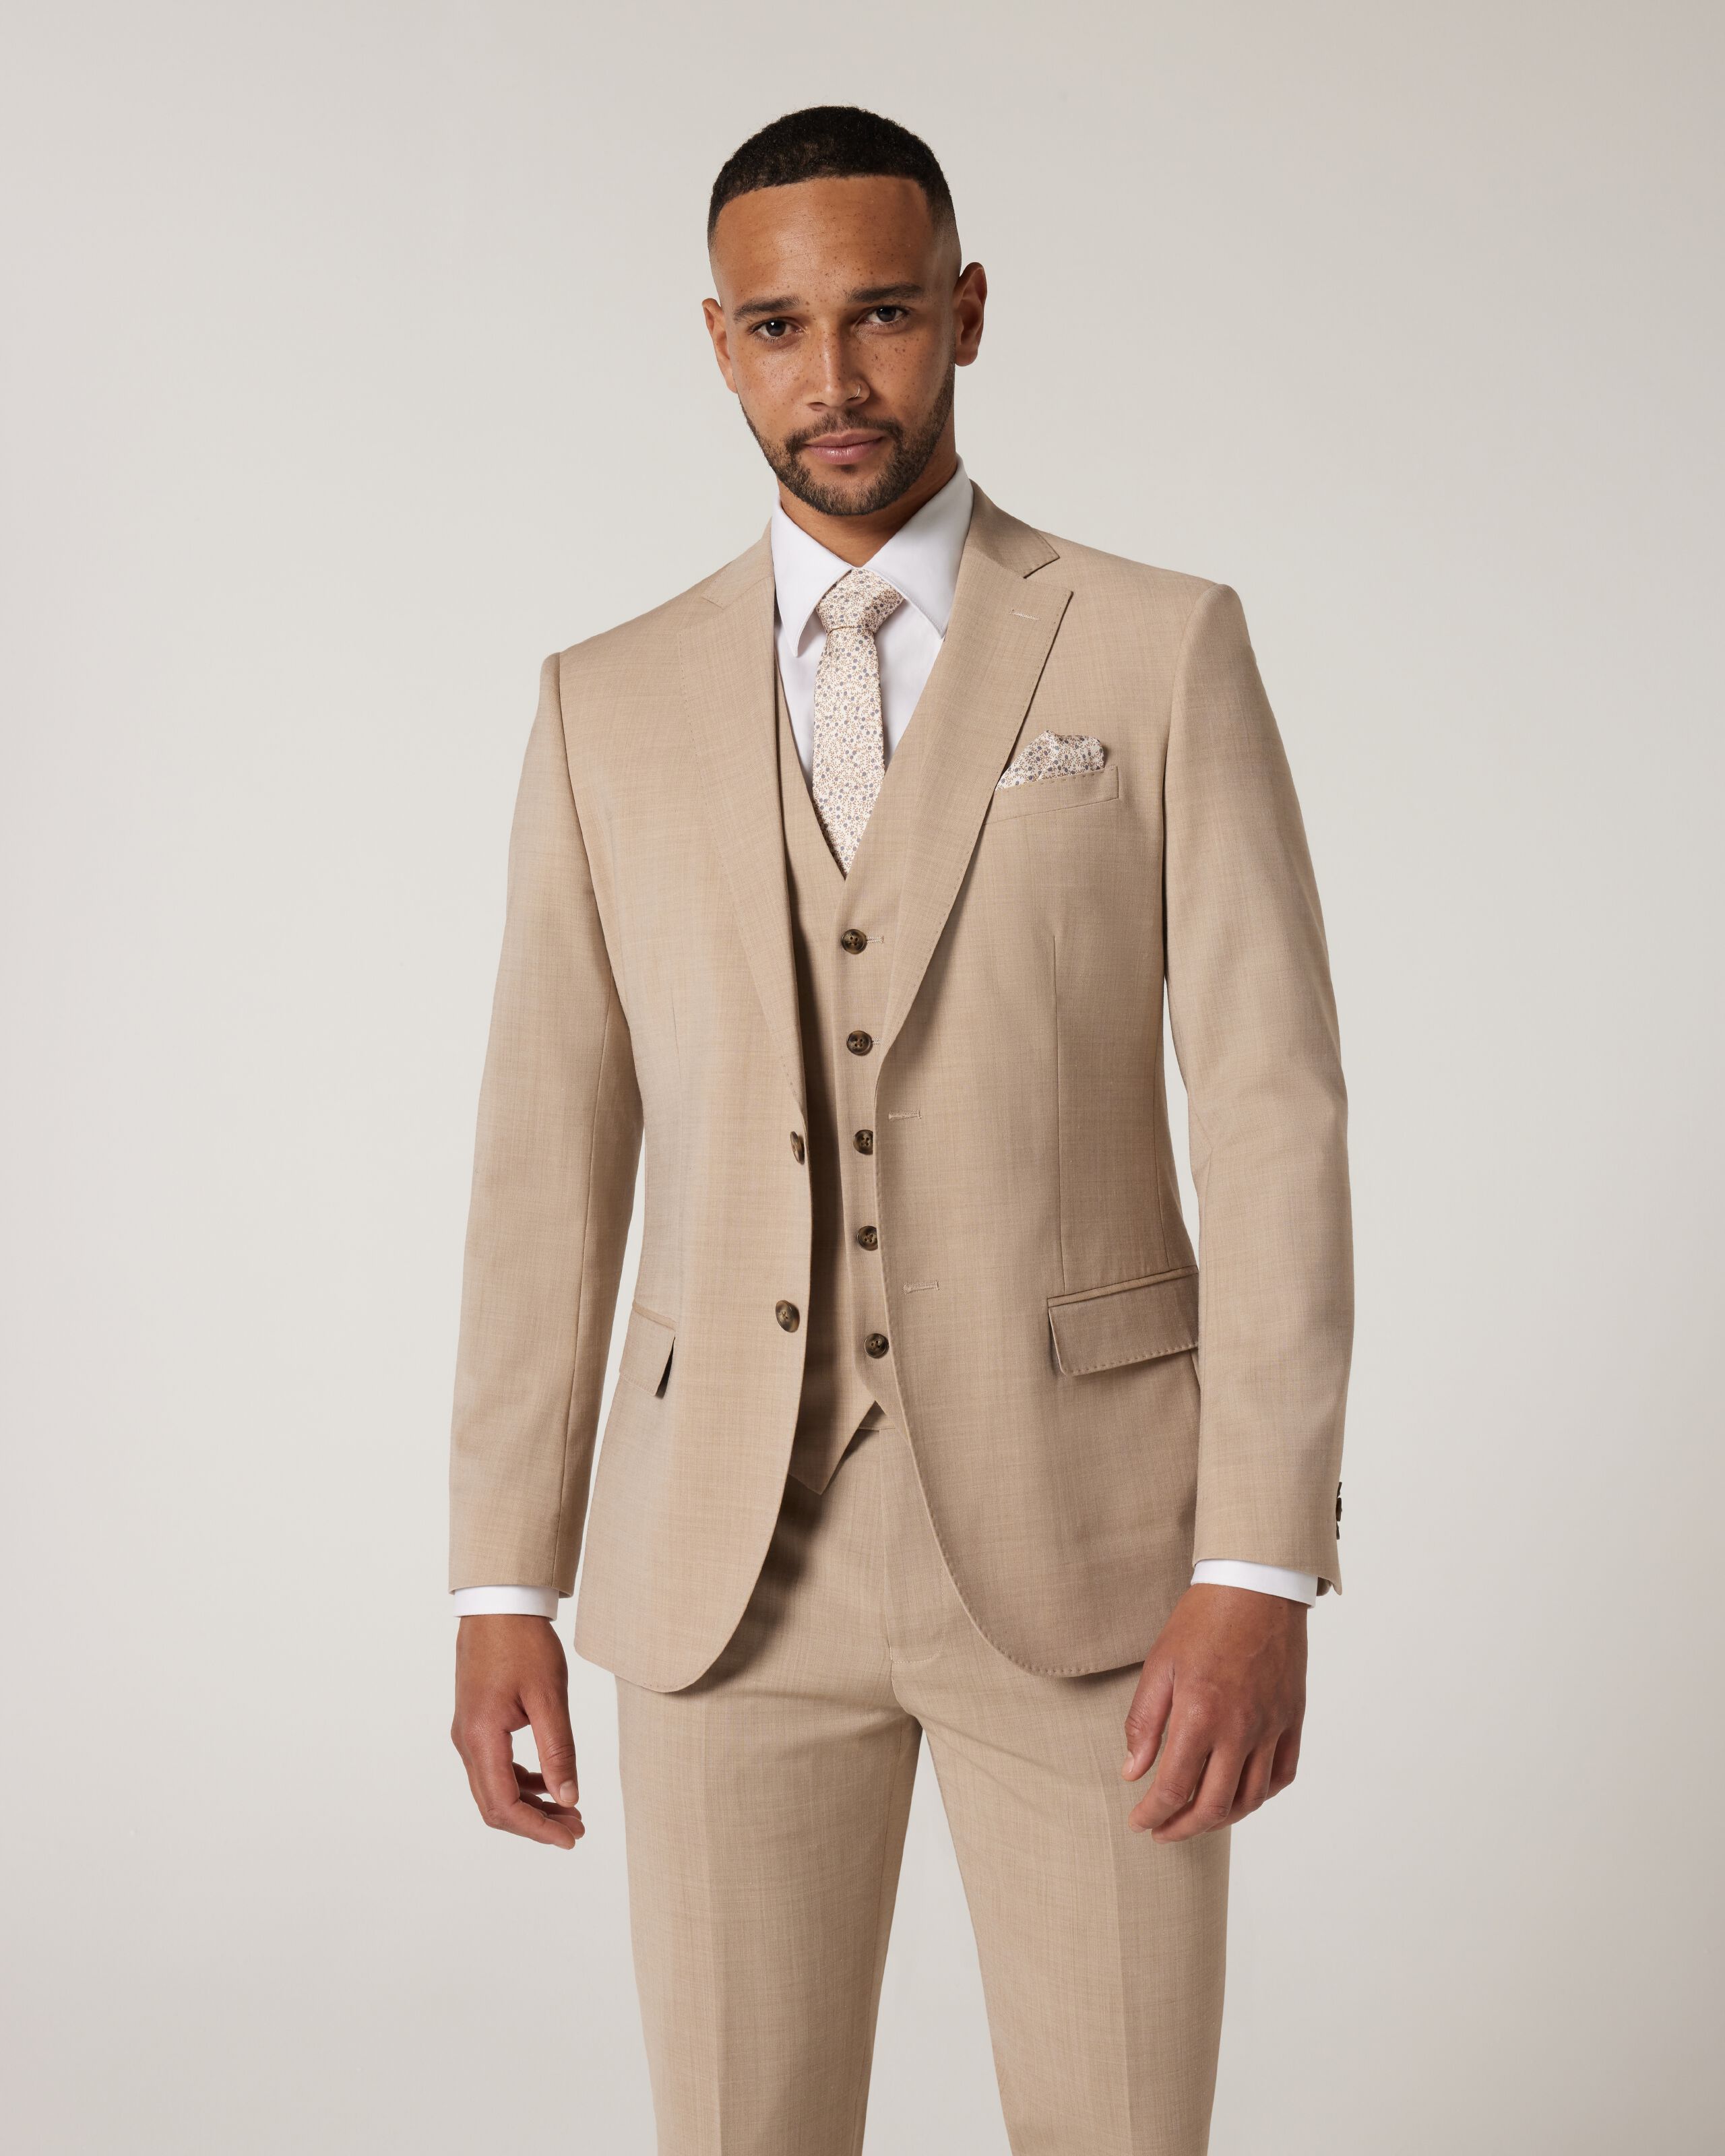 Men's Light Brown Notch Lapel 3-piece Suit Sophisticated Tailored Fit  Business Suit Unique Formal Attire, the Rising Sun Store, Vardo - Etsy